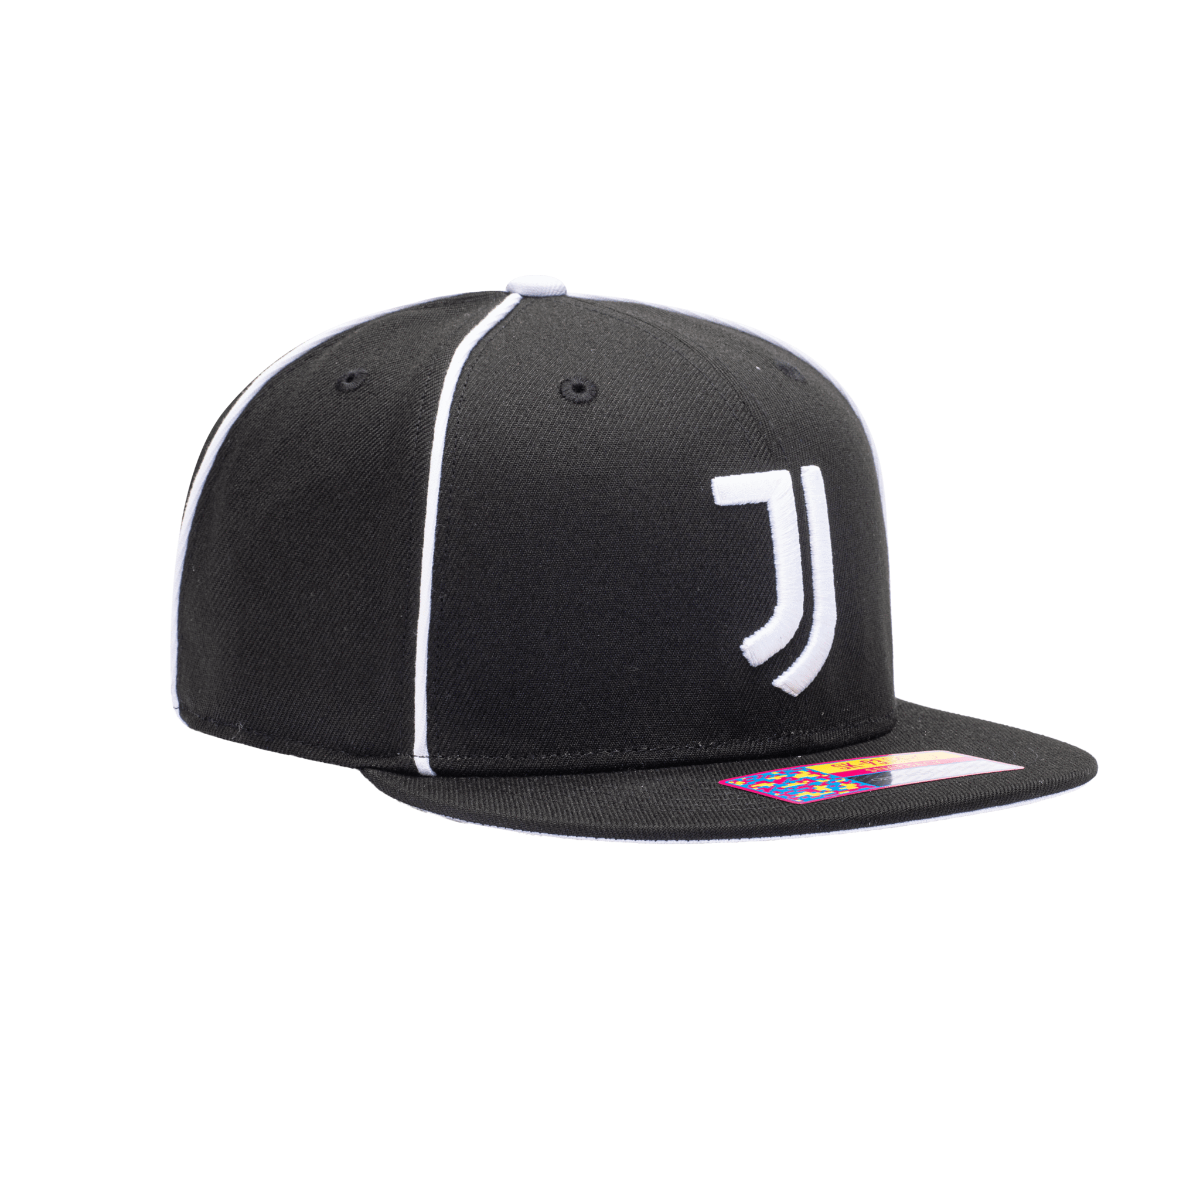 FI Collection Juventus Cali Night Snapback Hat - Black-White